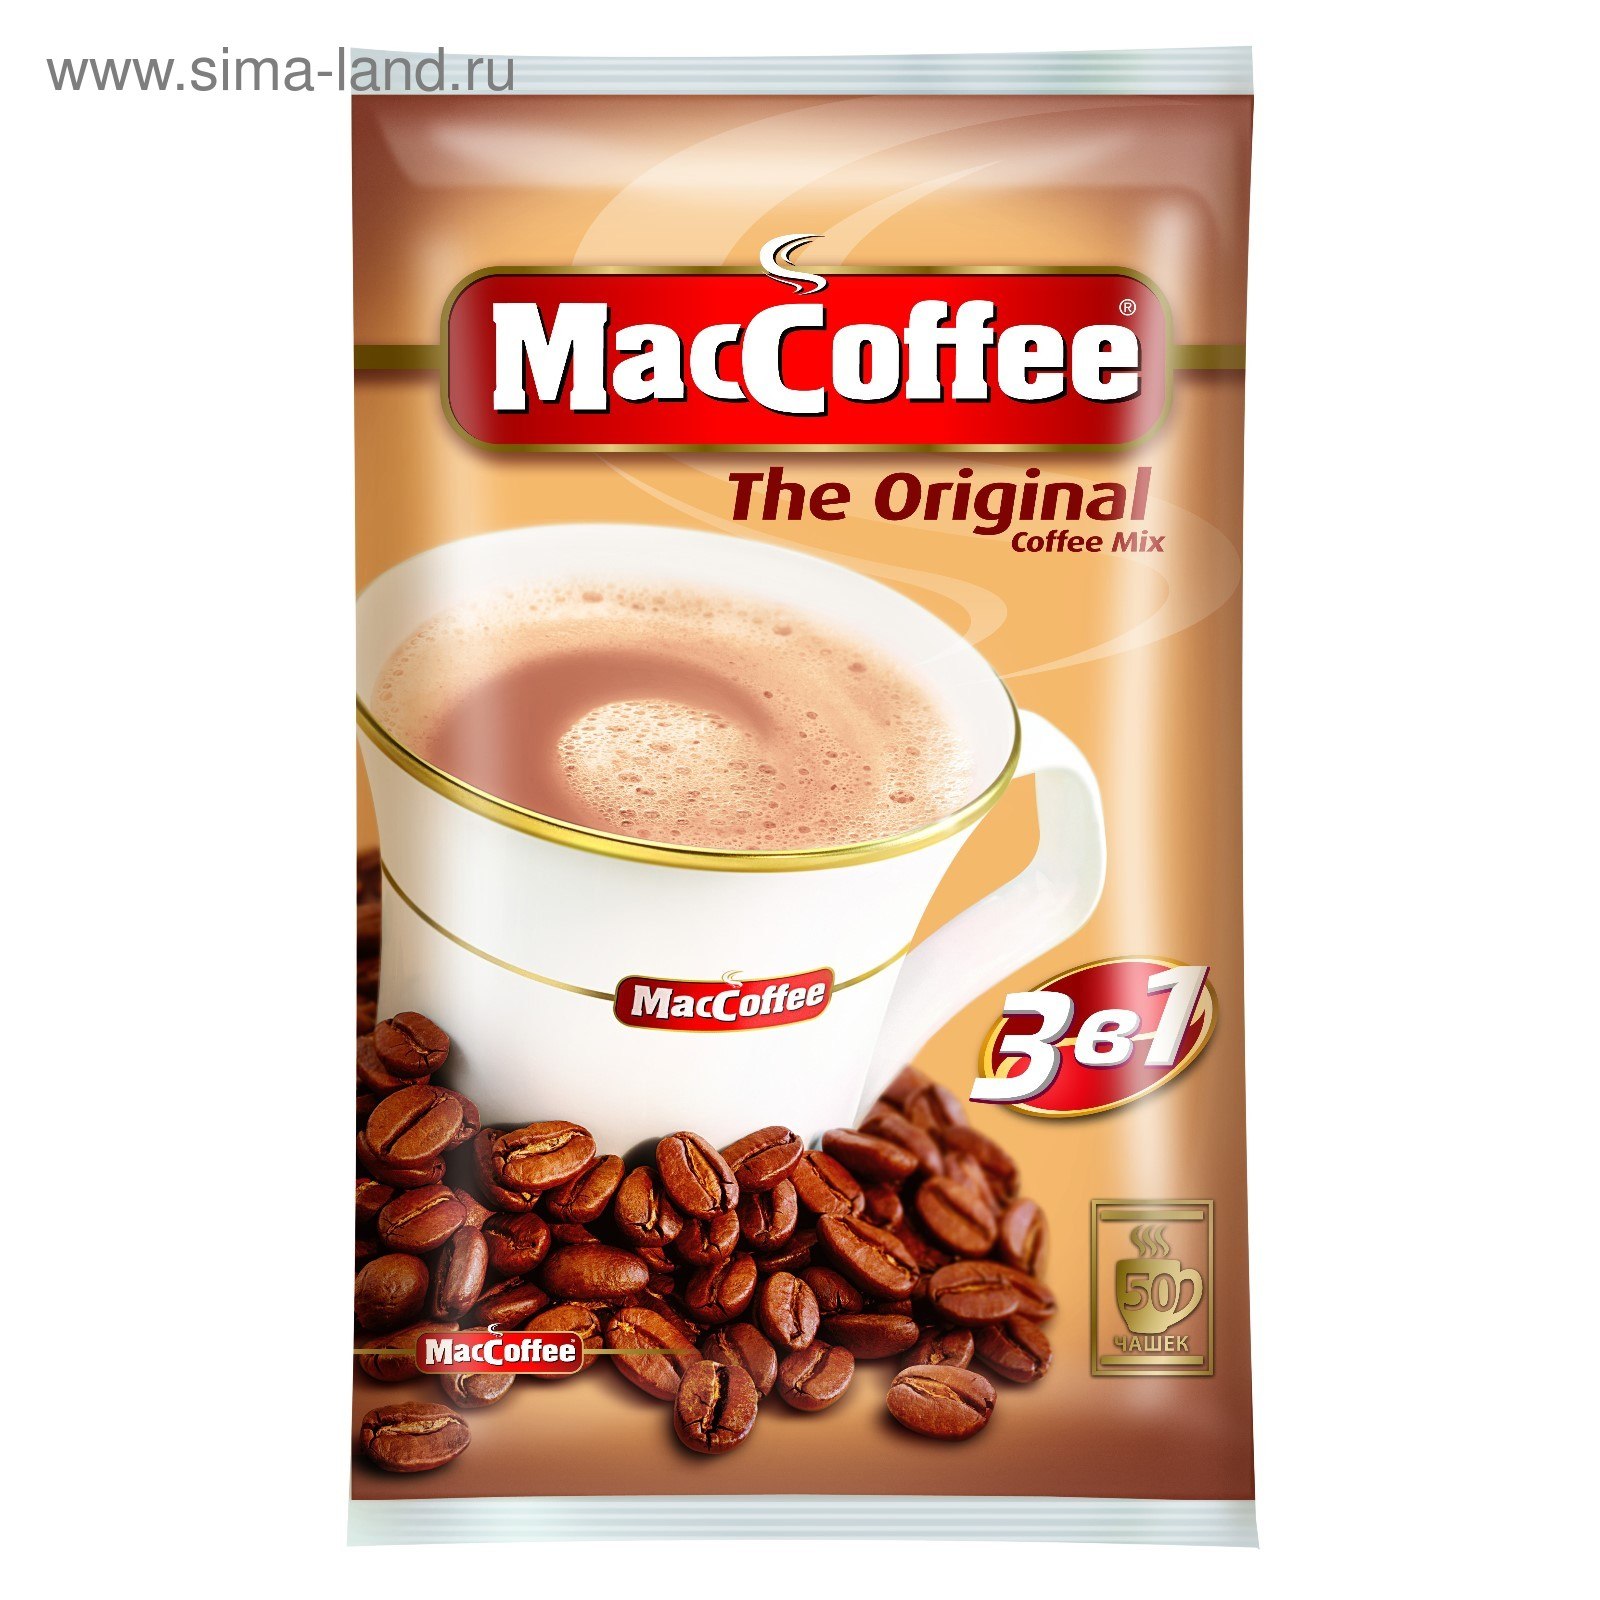 Кофе 3 триместр. Кофе MACCOFFEE 3в1 м/уп 20г. MACCOFFEE 3in1 10 шт. Напиток Маккофе кофейный 20г. Кофе 3 в 1 Маккофе.